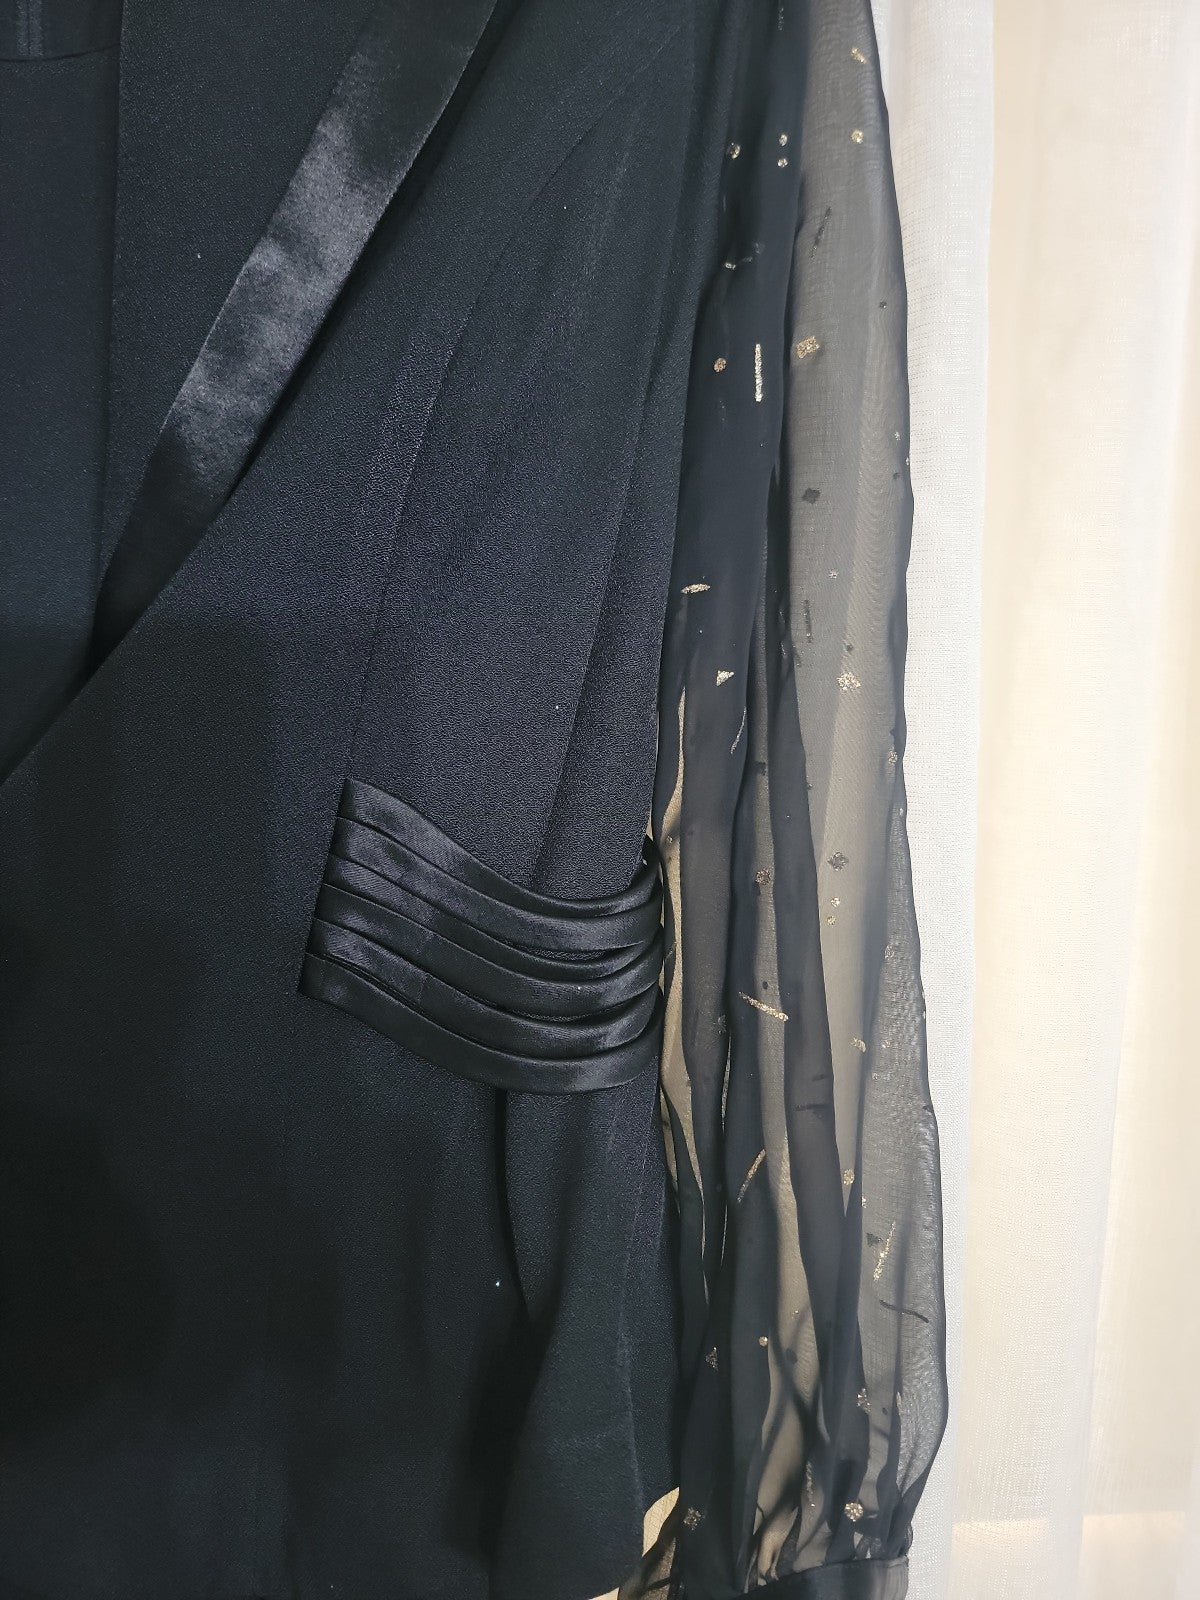 Elegant black evening dress with jacket 7oFU2Dyj5